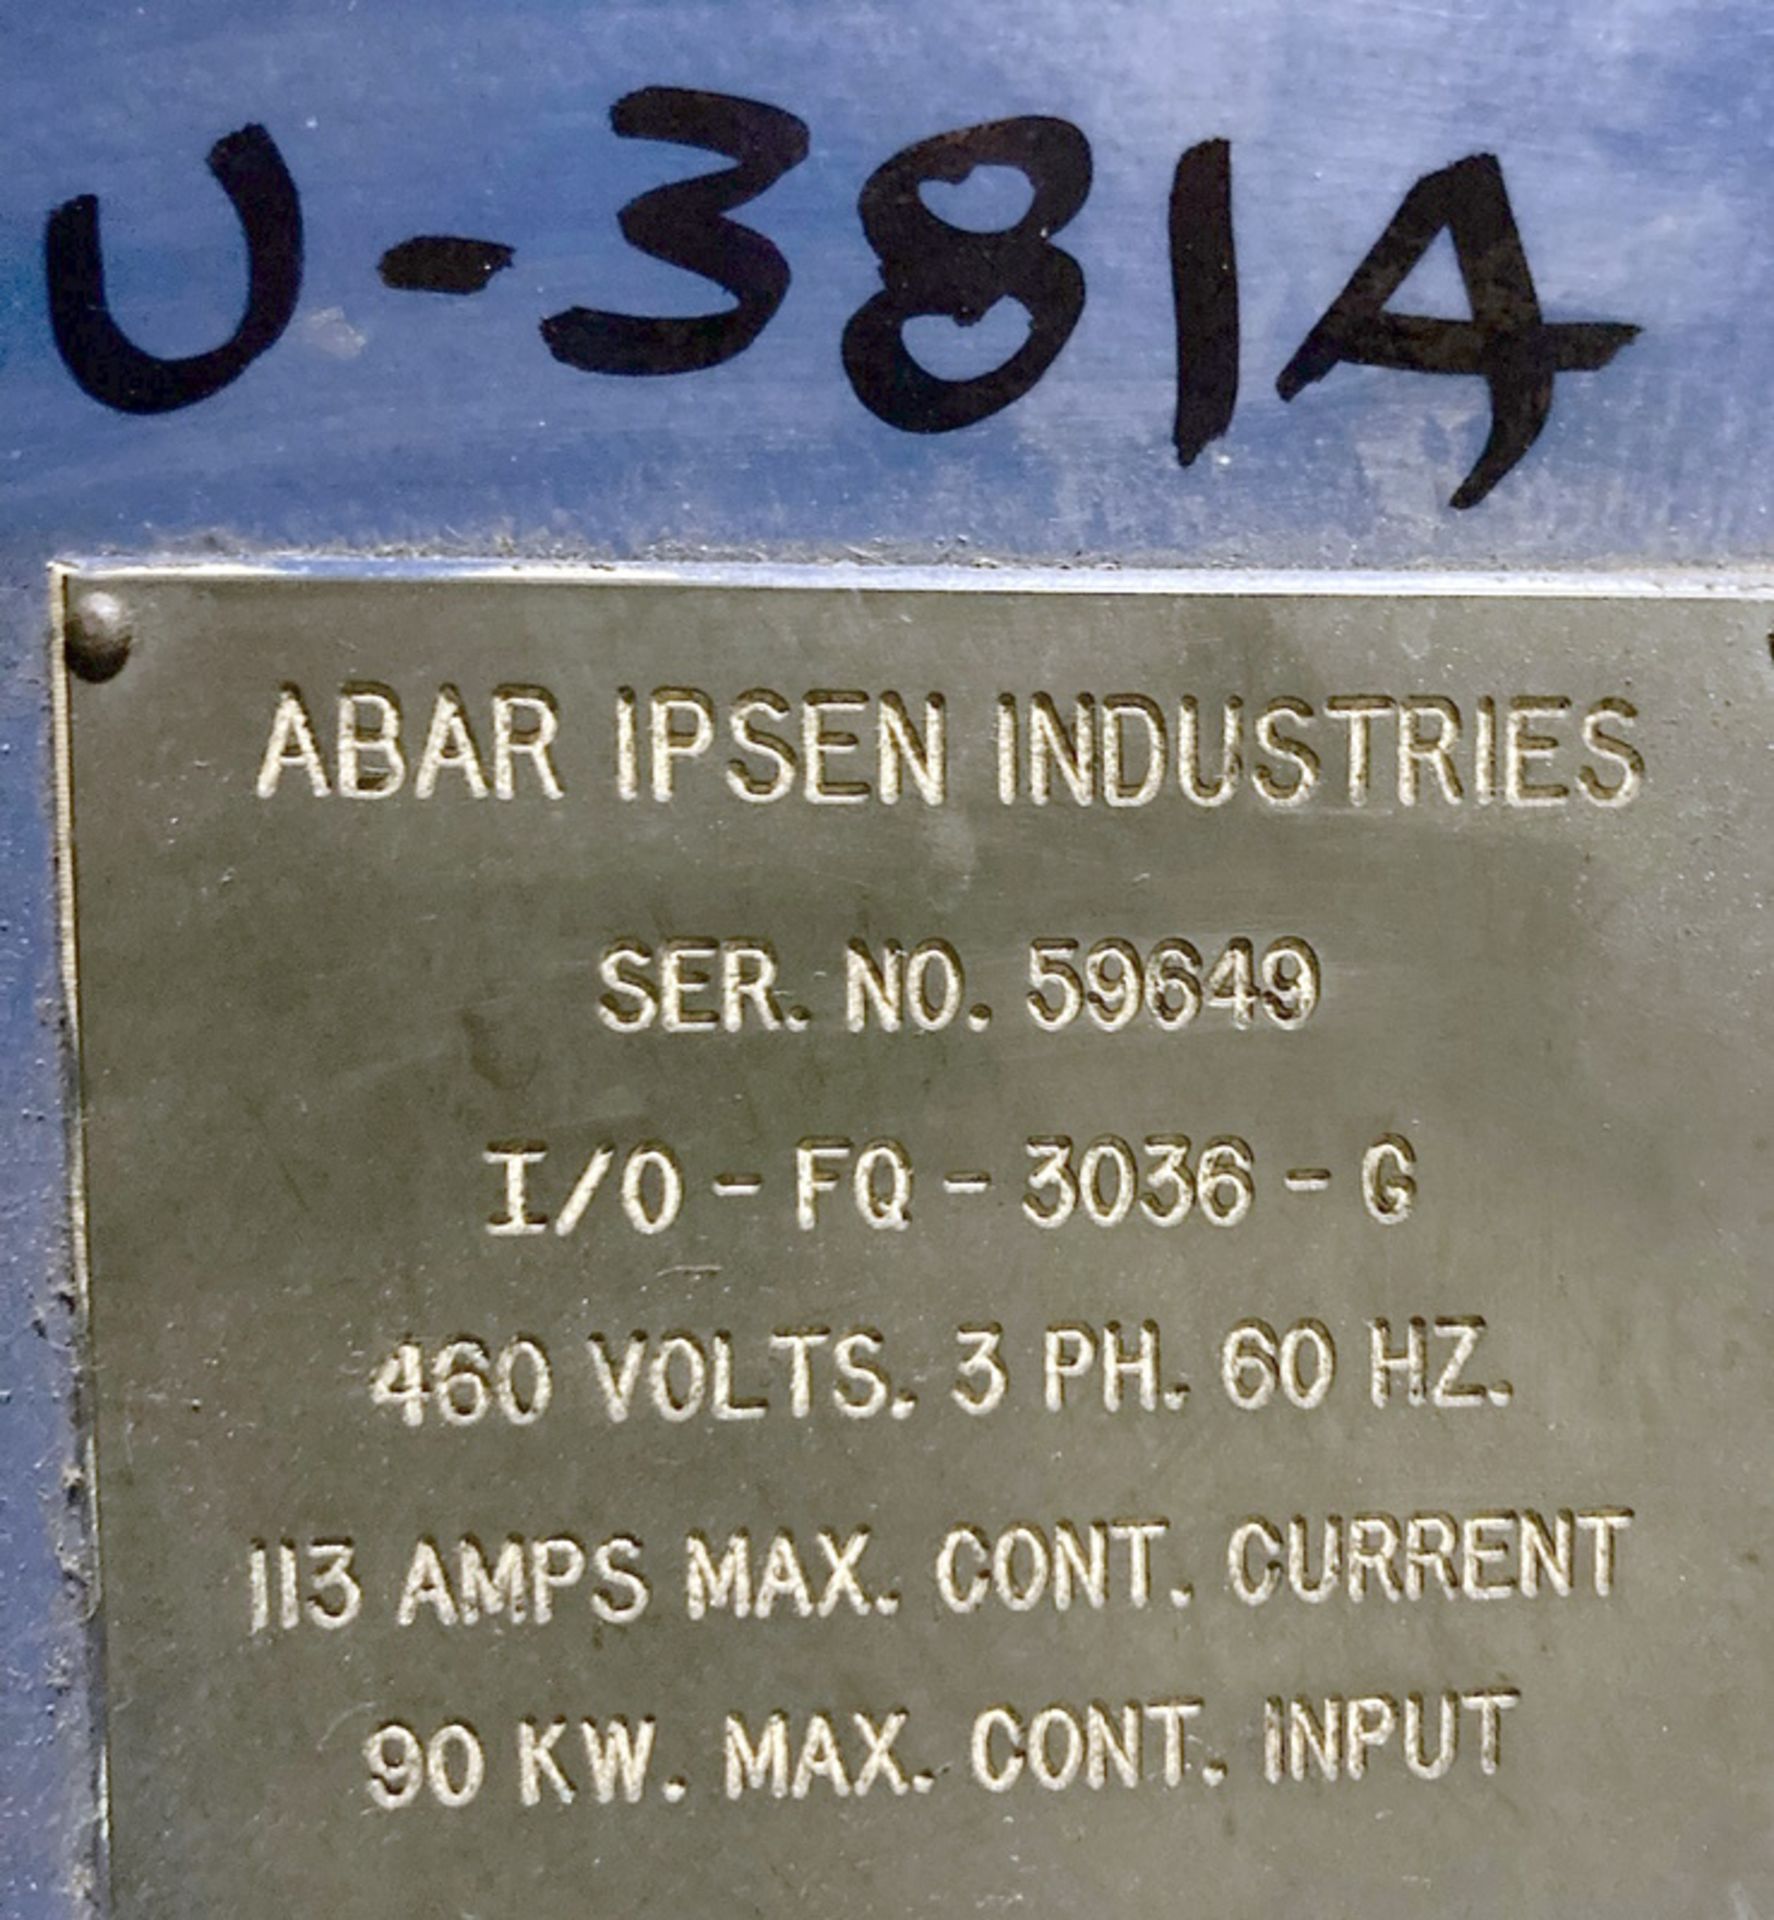 Abar Ipsen I/O-FQ-3036-G IQ Furnace - Image 2 of 6